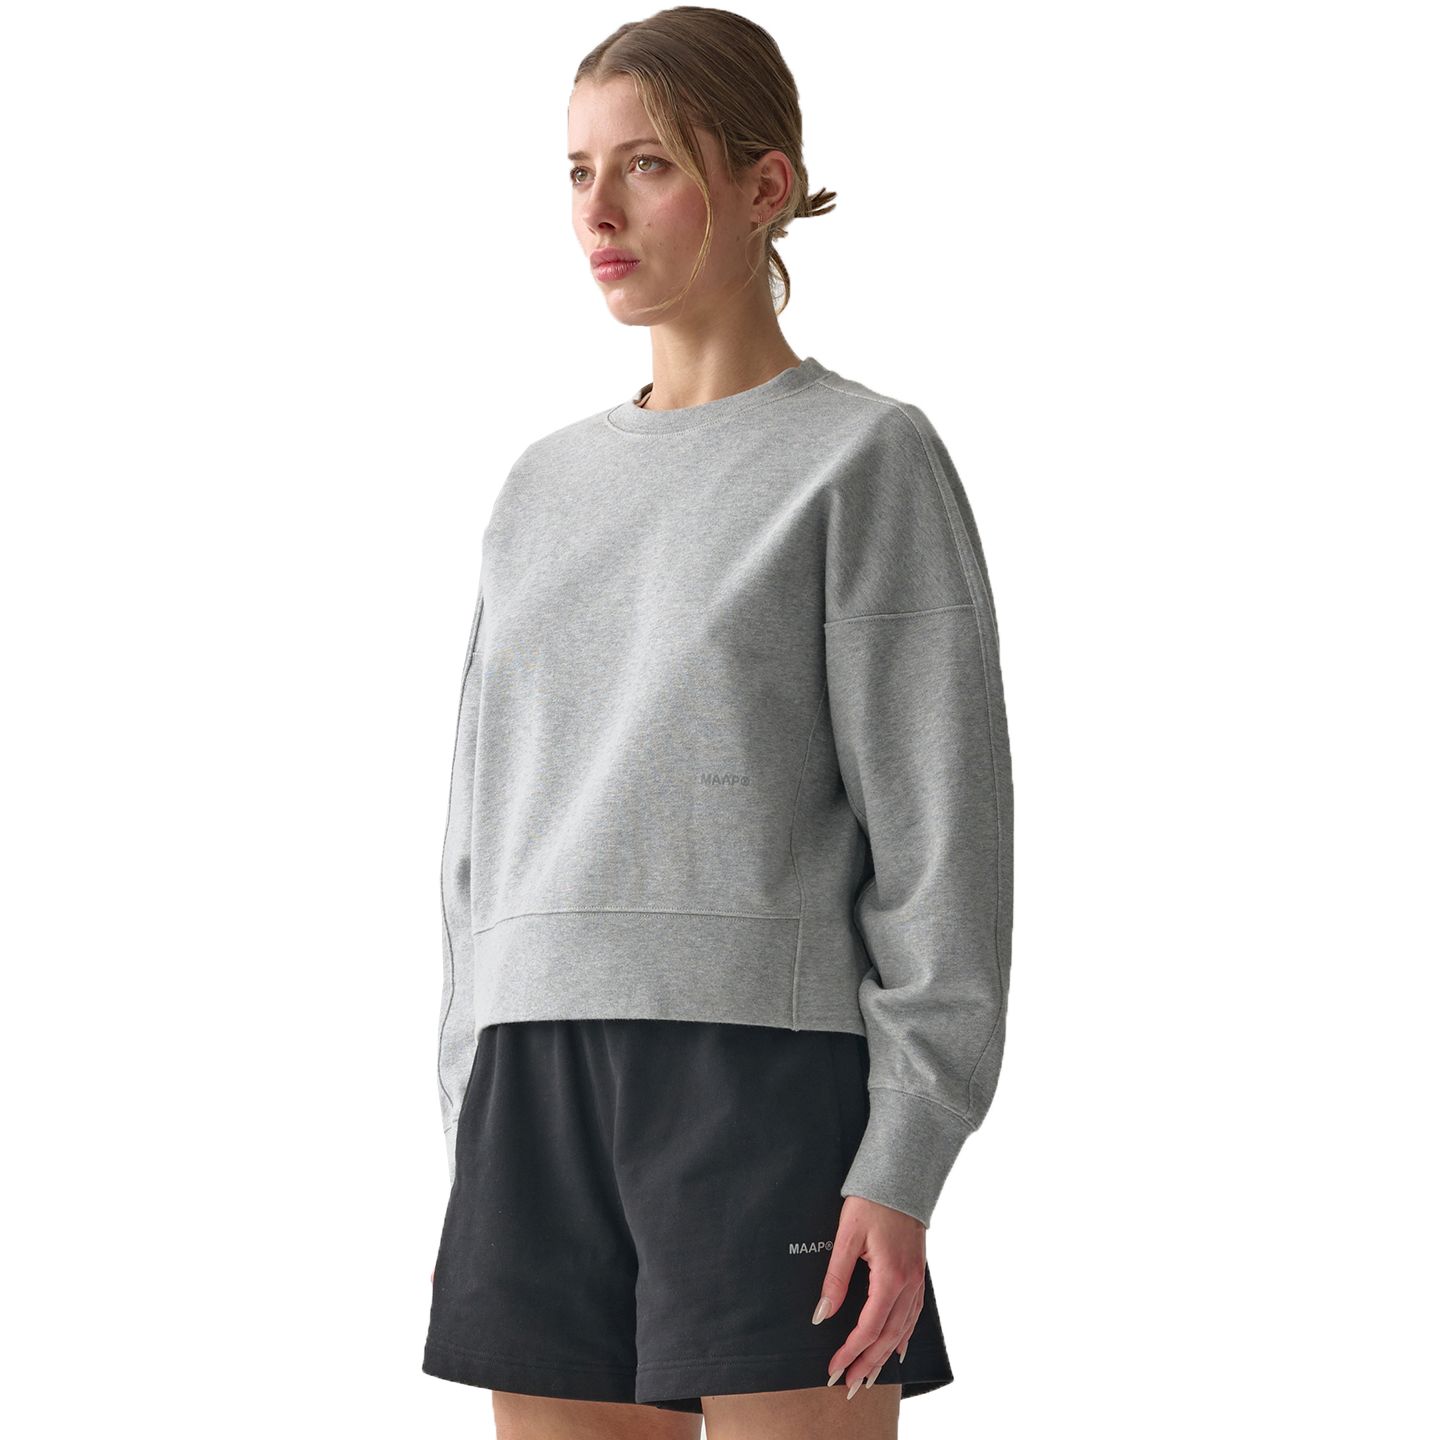 Produktbild von MAAP Essentials Crew Sweatshirt Damen - grey marle